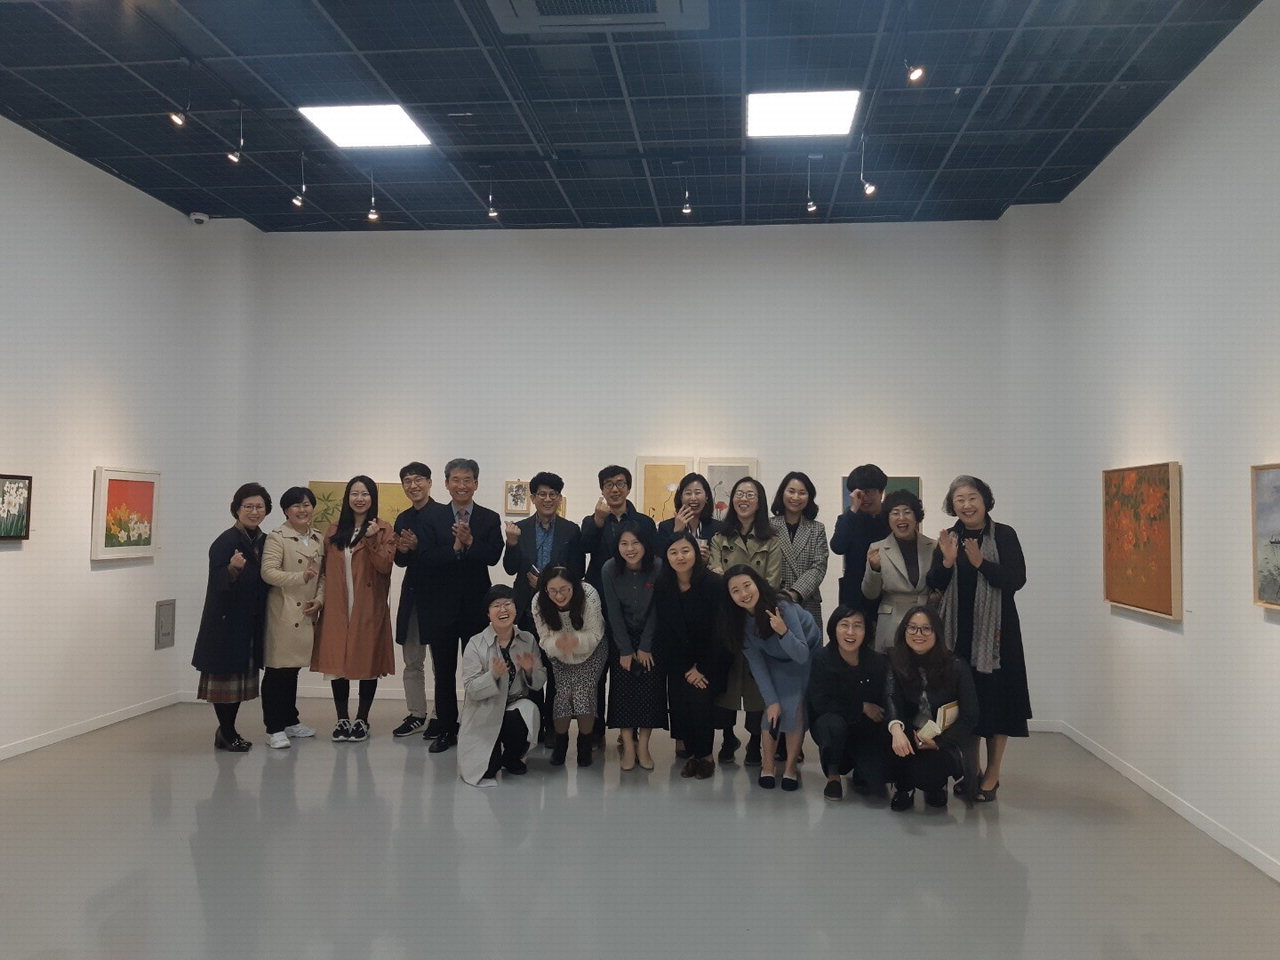 윤건영 청주교육대학교 총장을 비롯한 참여 작가, 작가의 가족과 친구 등 관계자 30여명이 참석해 사이전 개막식을 개최했다./ 청주교대 제공